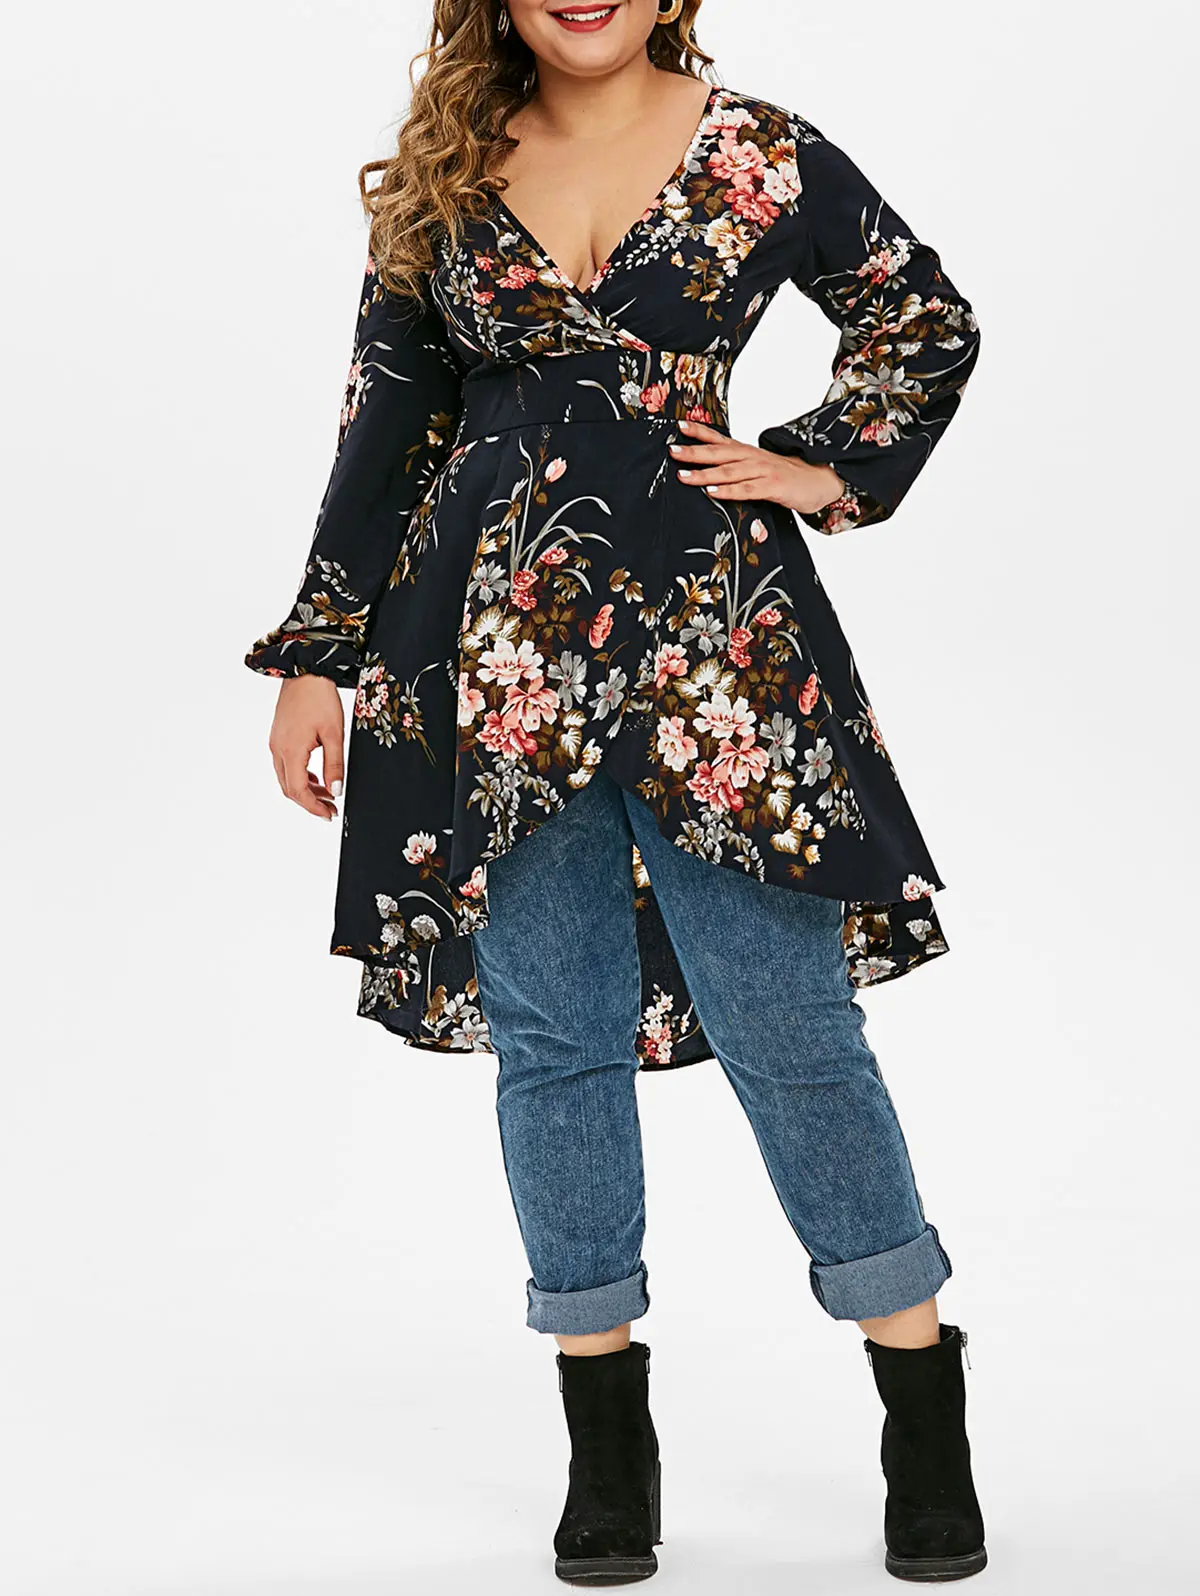 ROSEGAL 5X топ с цветочным принтом, асимметричная блуза с длинным рукавом и глубоким вырезом, женская сексуальная винтажная длинная туника с высокой талией, рубашки